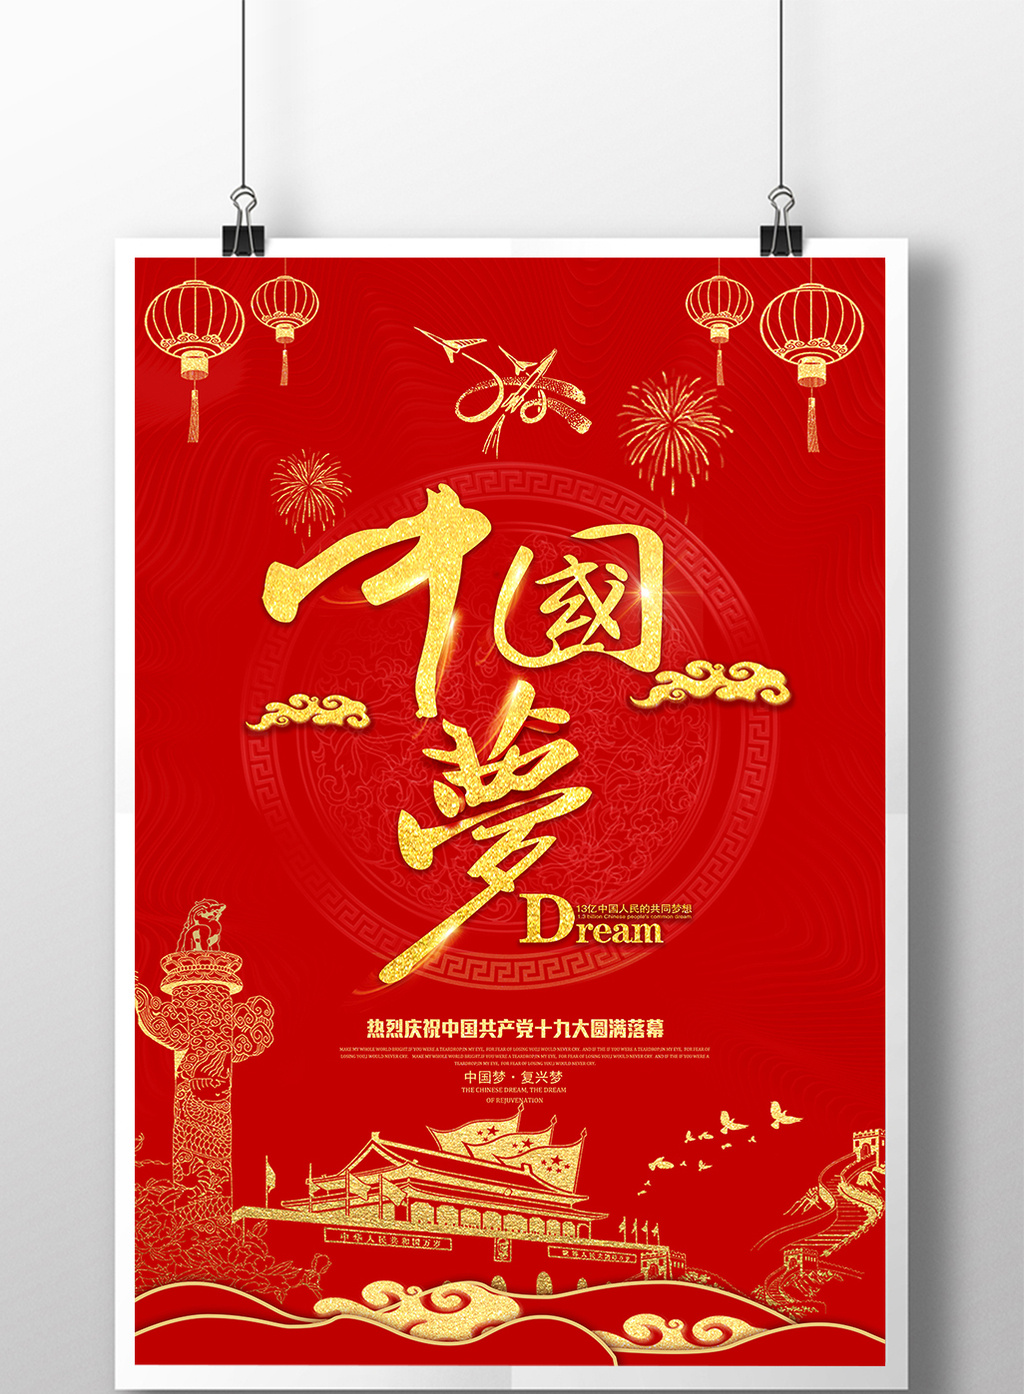 的大气创意红色中国梦海报设计素材免费下载,本次作品主题是广告设计